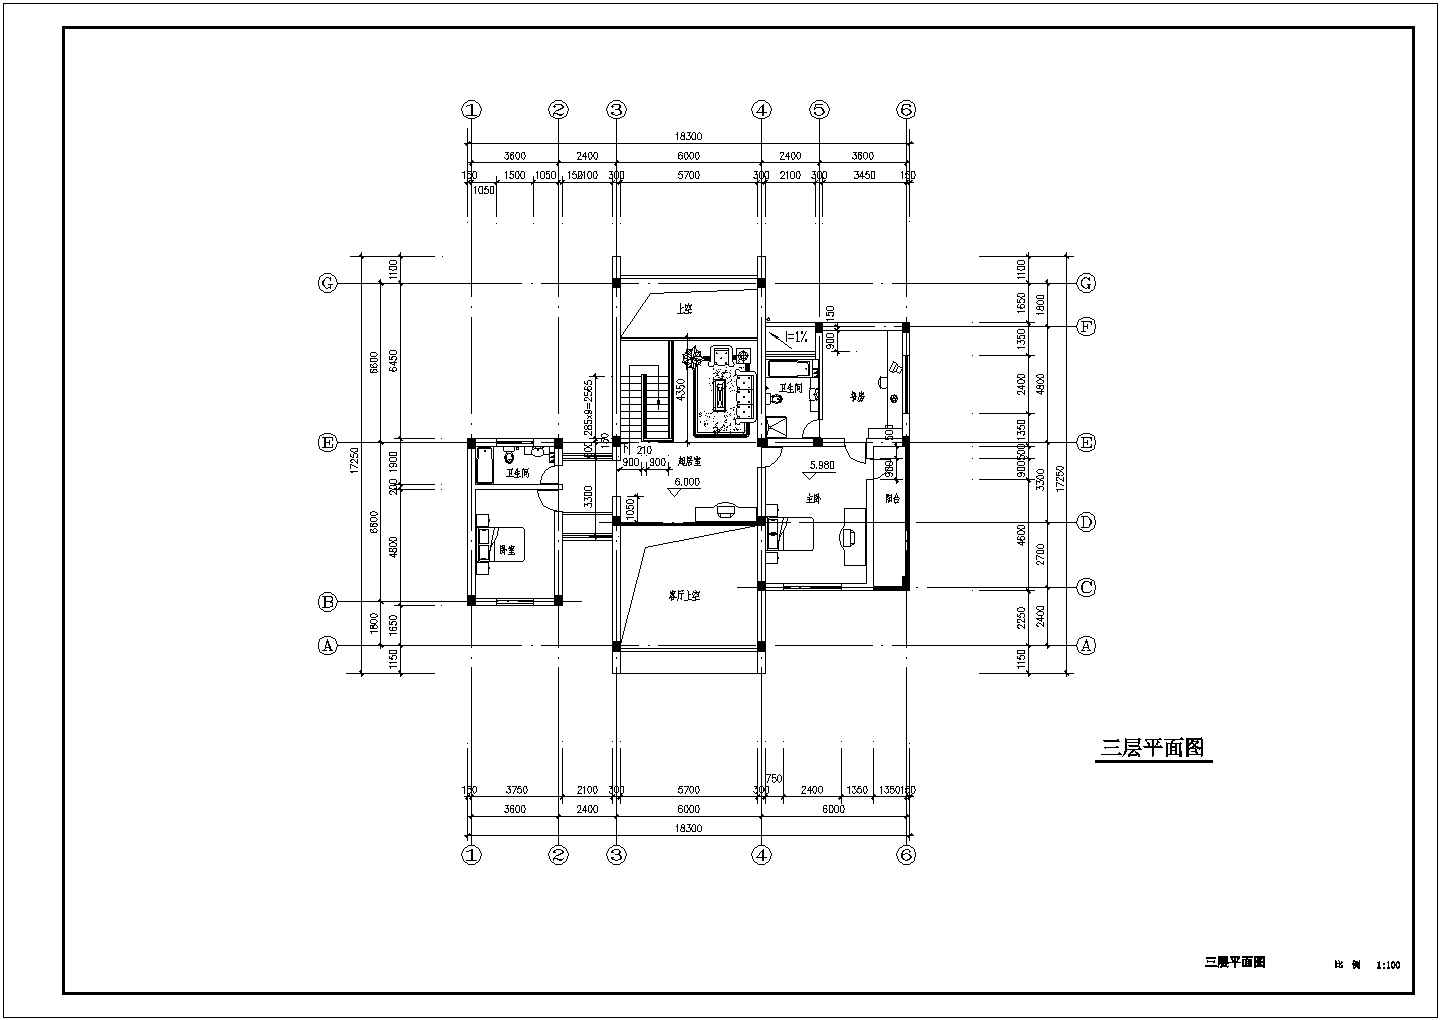 【泰州】嘉恒庭园两个别墅初步设计图纸